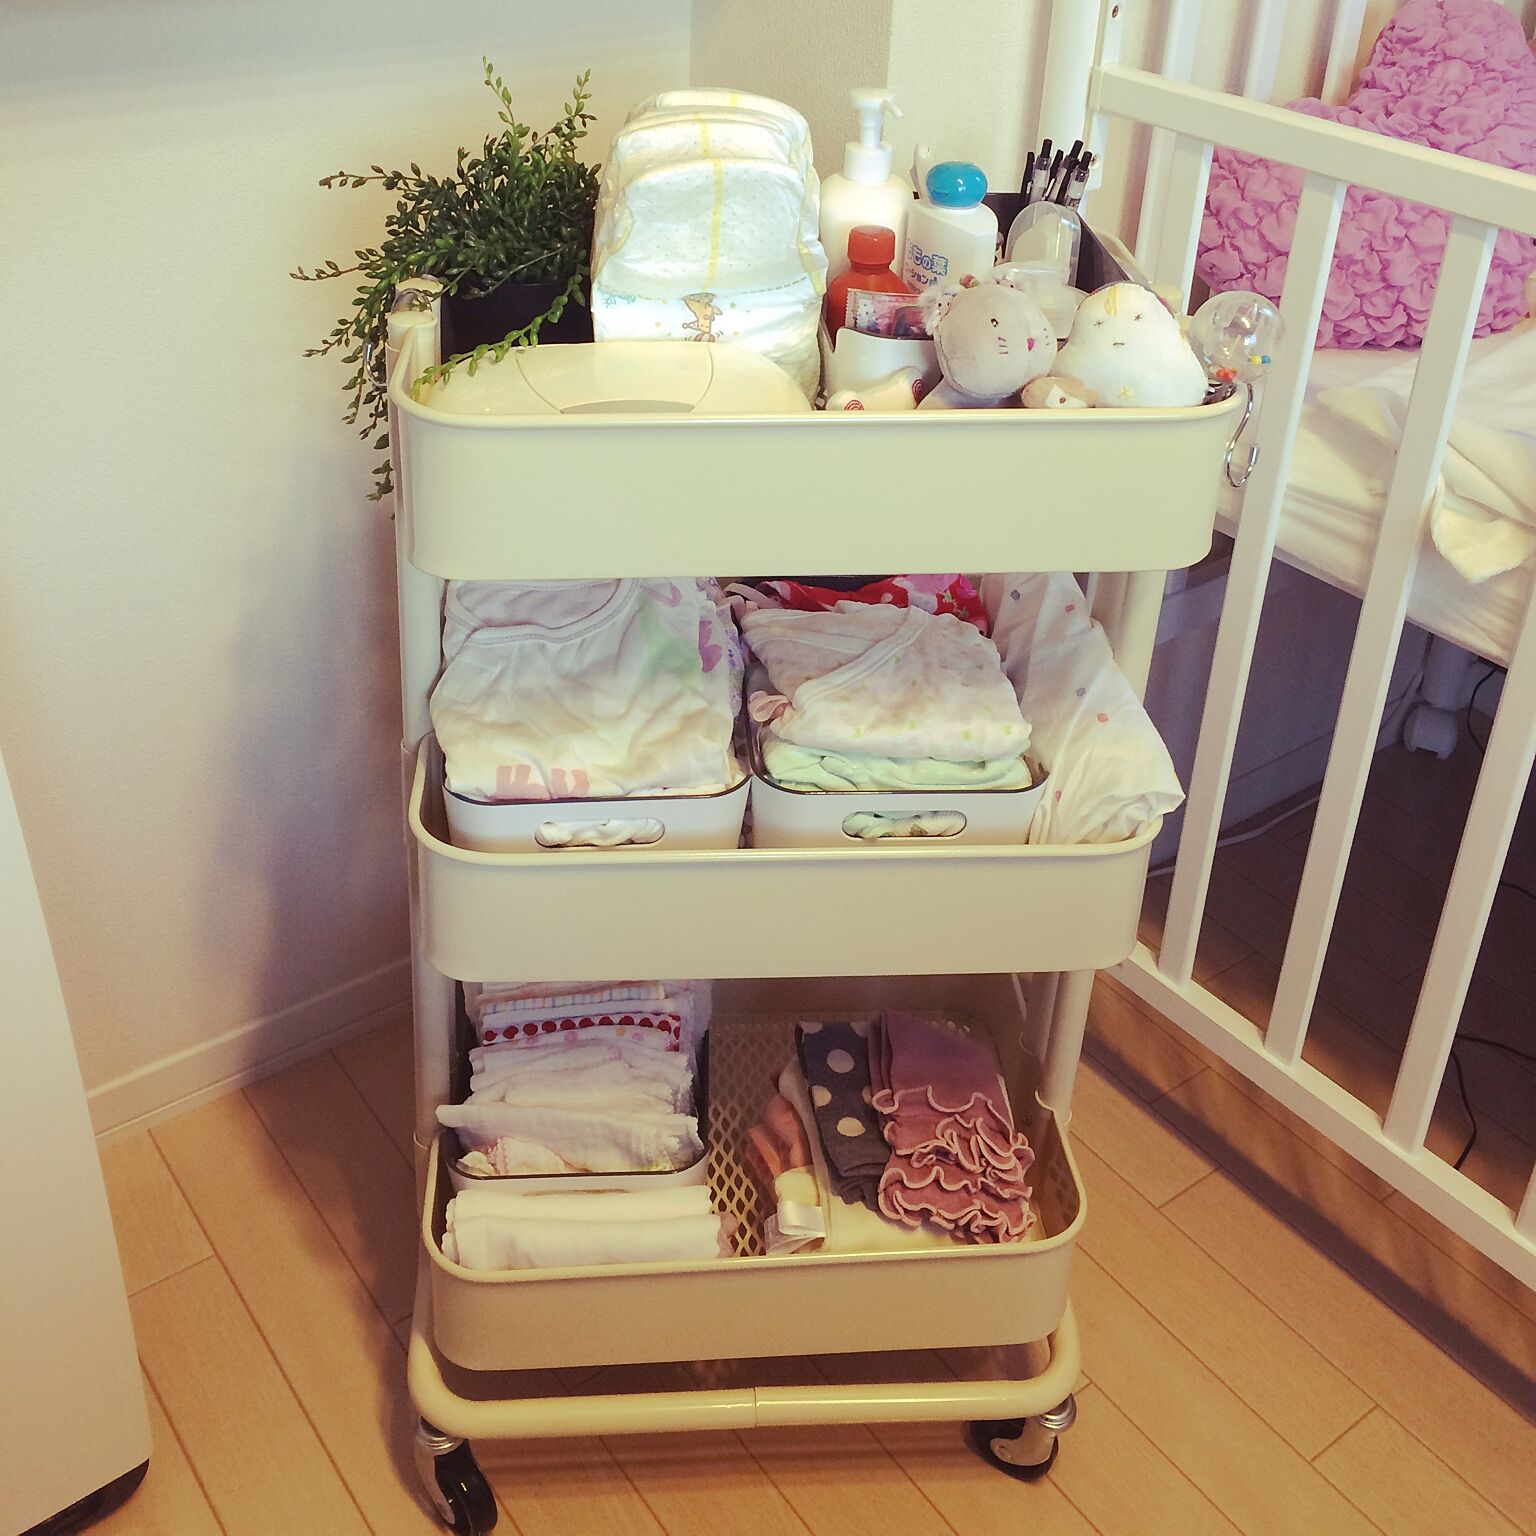 キャスター付きの【RASKOG】キッチンワゴンは赤ちゃん用品の収納に最適です！昼は居間に夜は寝室に移動して使えます。